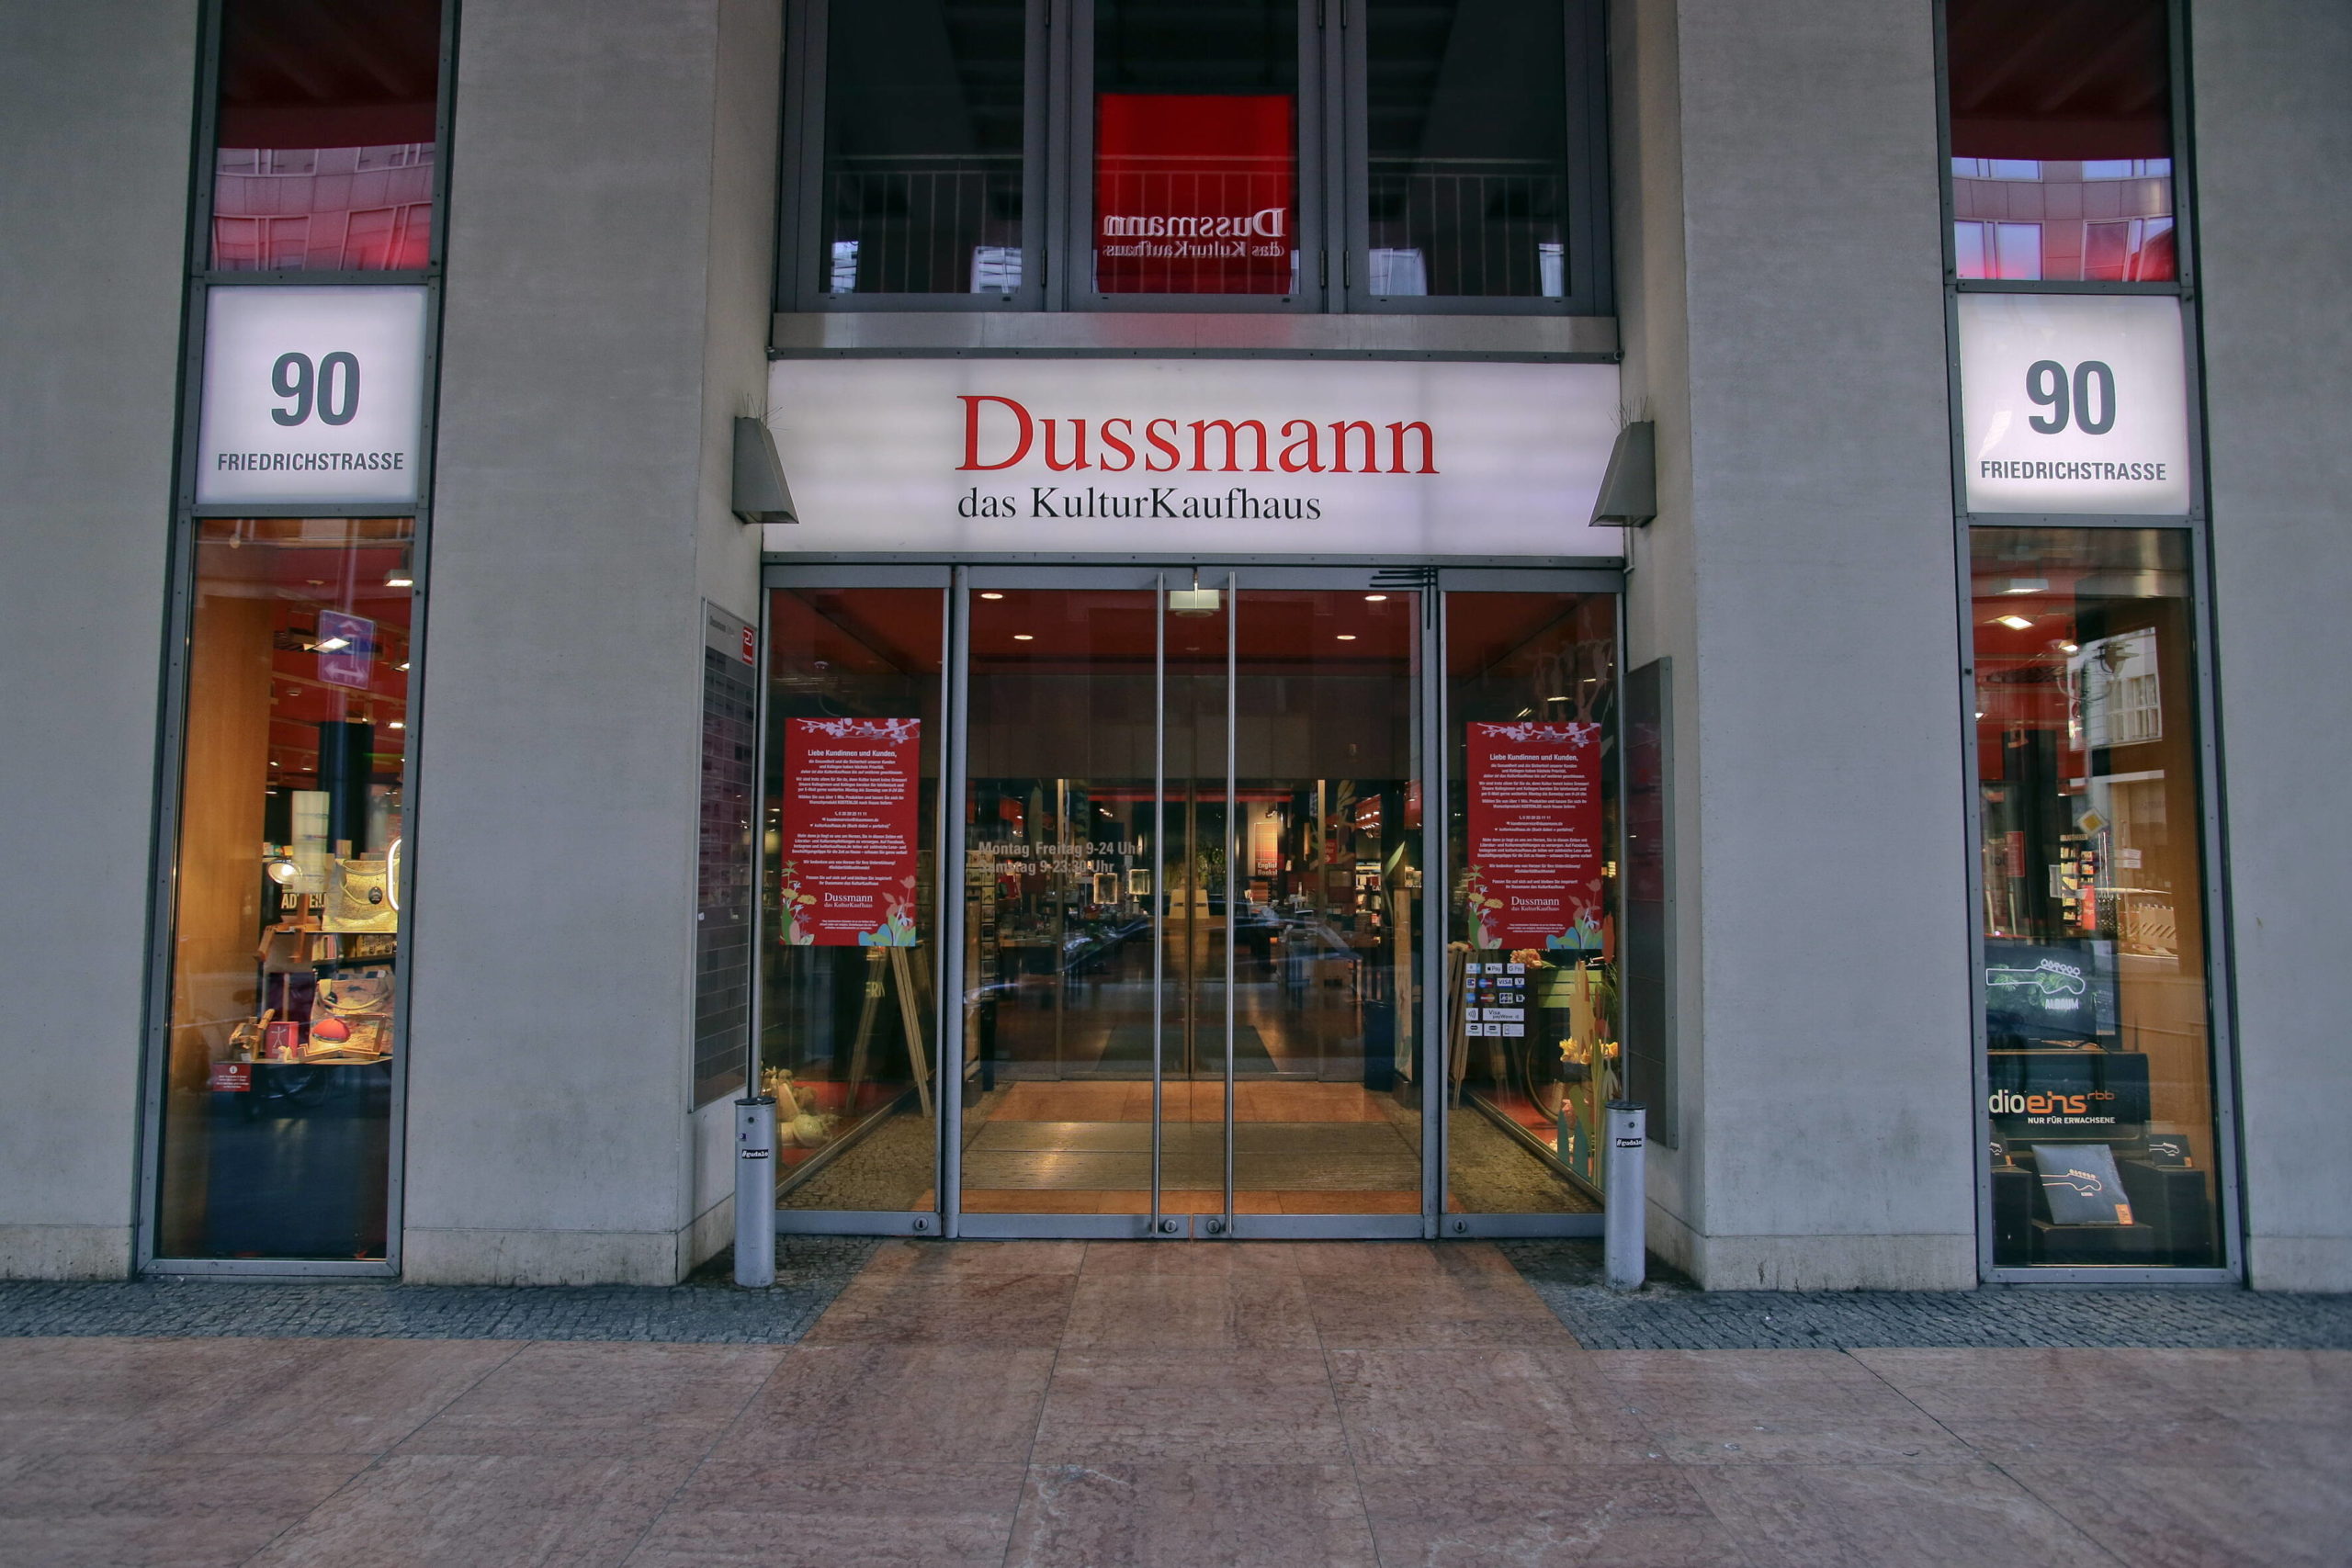 Englische Bücher kaufen in Berlin Dussmann ist der perfekte Ort, um sich an einem grauen Herbstabend auf die Suche nach neuen Englischen Büchern zu machen.